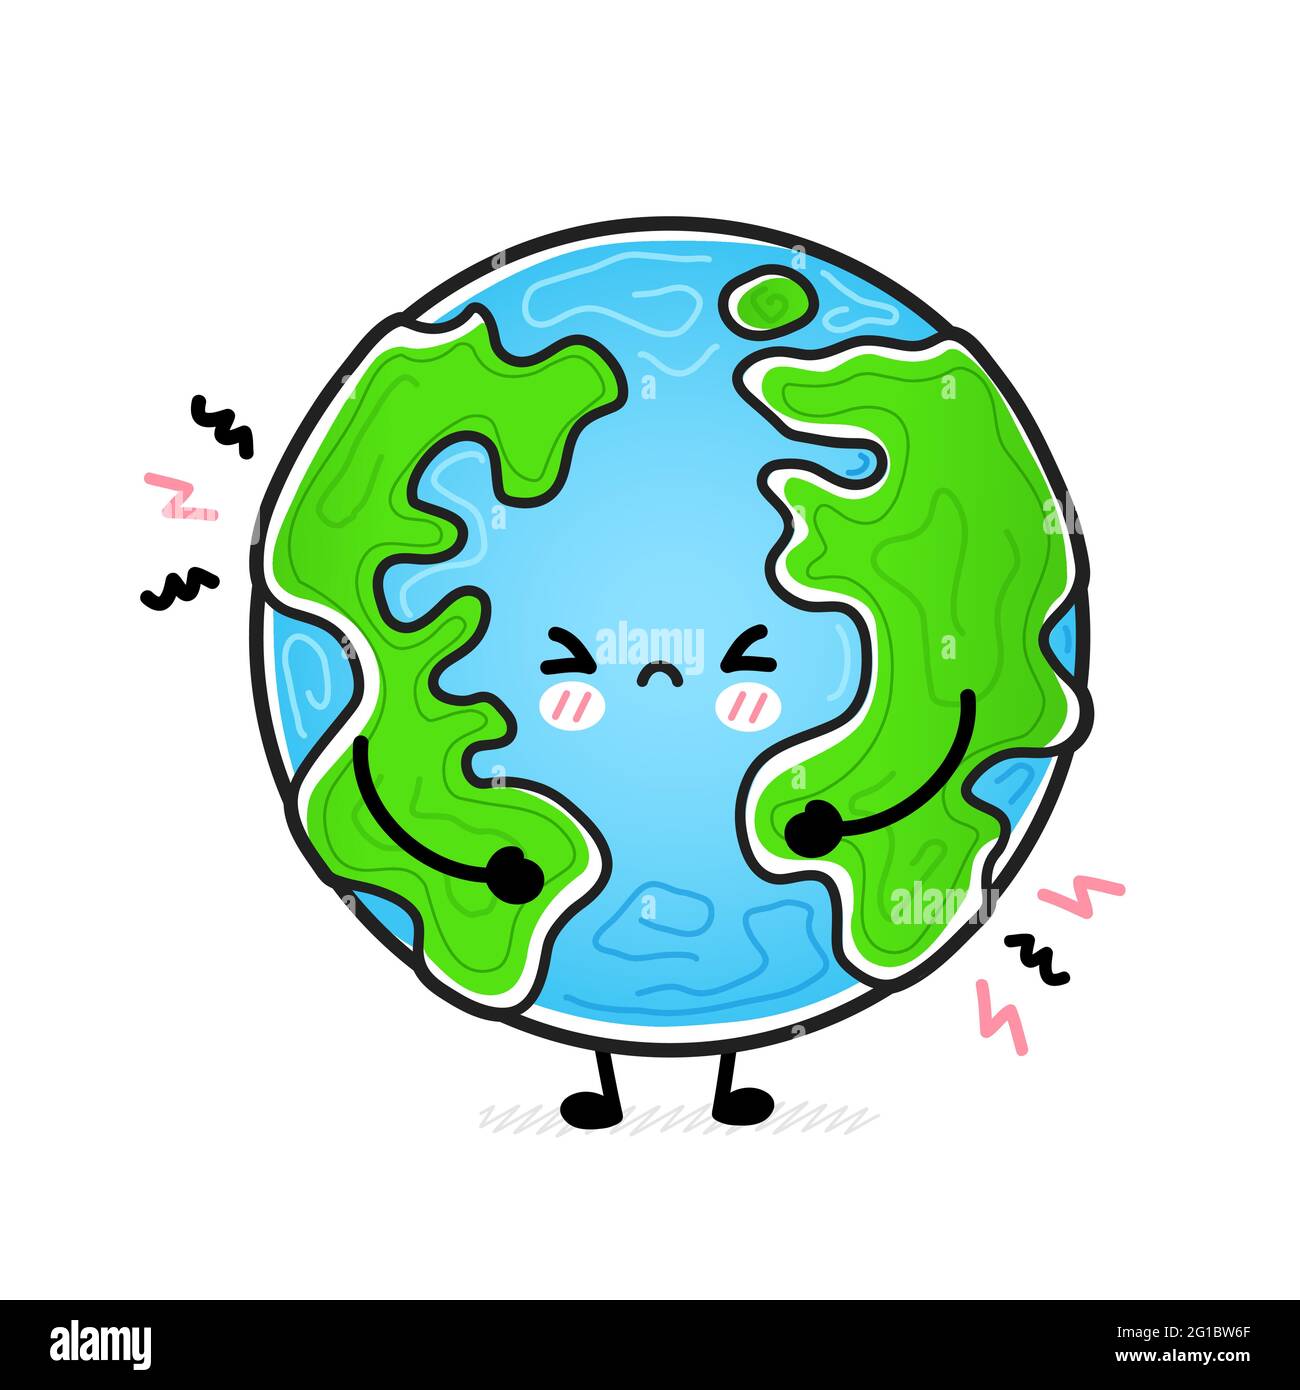 Lindo y divertido planeta Tierra triste. Icono de ilustración de carácter kawaii dibujado a mano vectorial. Aislado sobre fondo blanco. Planeta Tierra, ecología, concepto de carácter eco mascota Ilustración del Vector